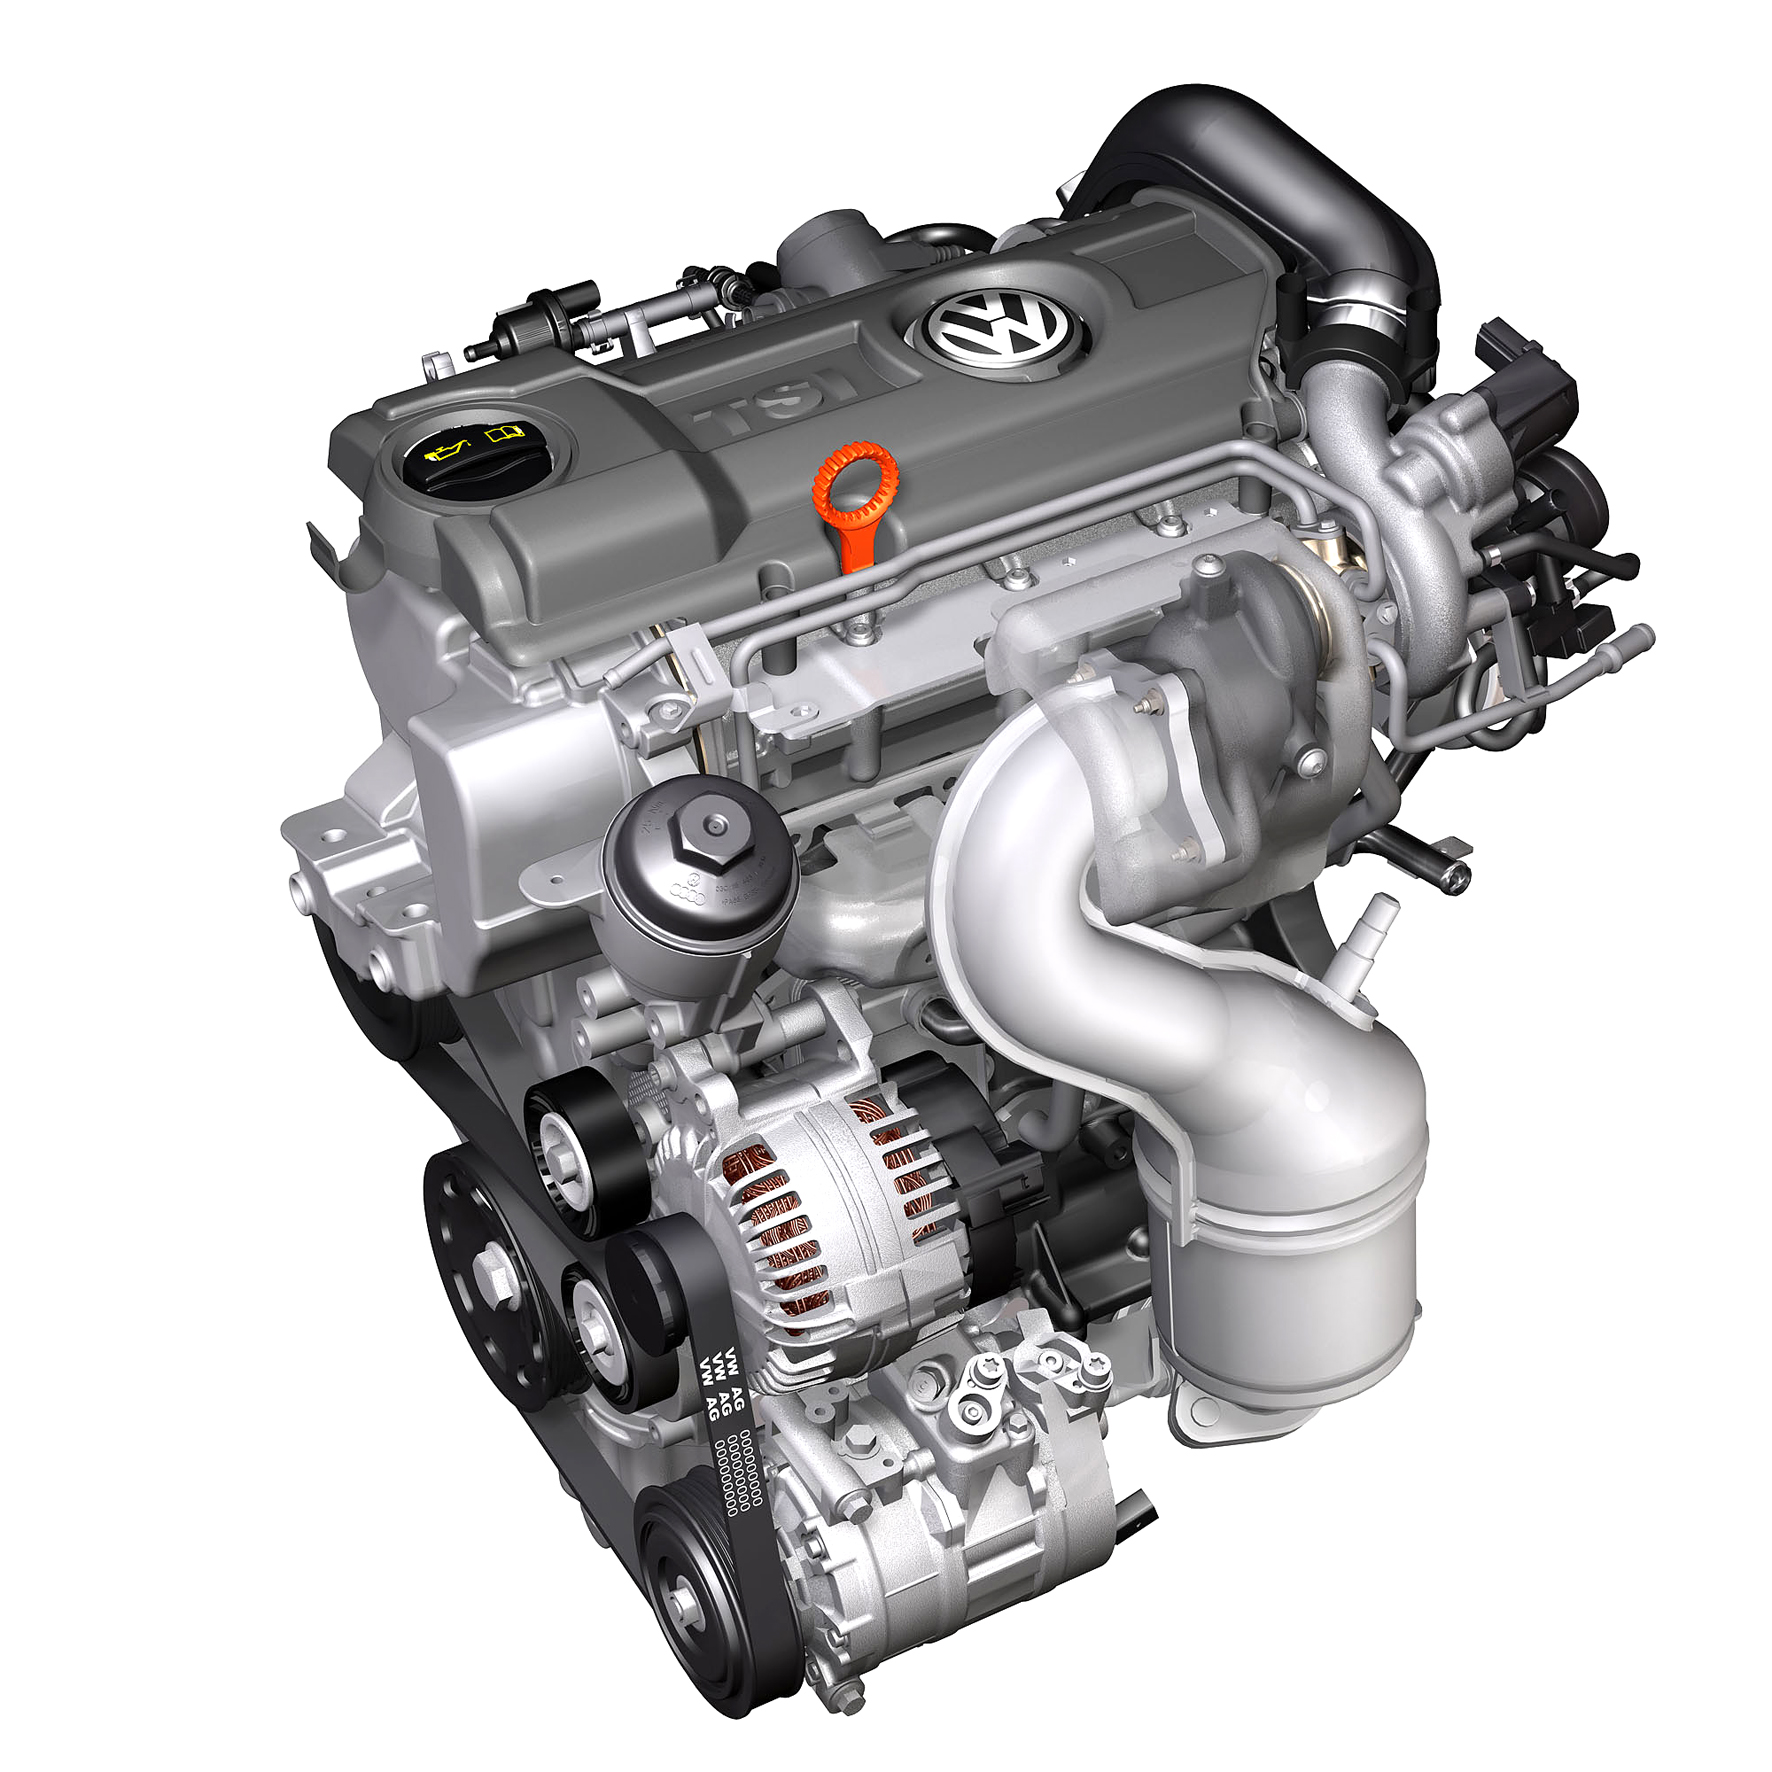 Фольксваген 1.4 122 л с. Двигатель Саха 1.4 TSI 122 Л.С. Мотор VW 1.4 TSI 122 Л.С. 1.4 TSI 122 CAXA. Двигатель 1.4 Саха 122лс.